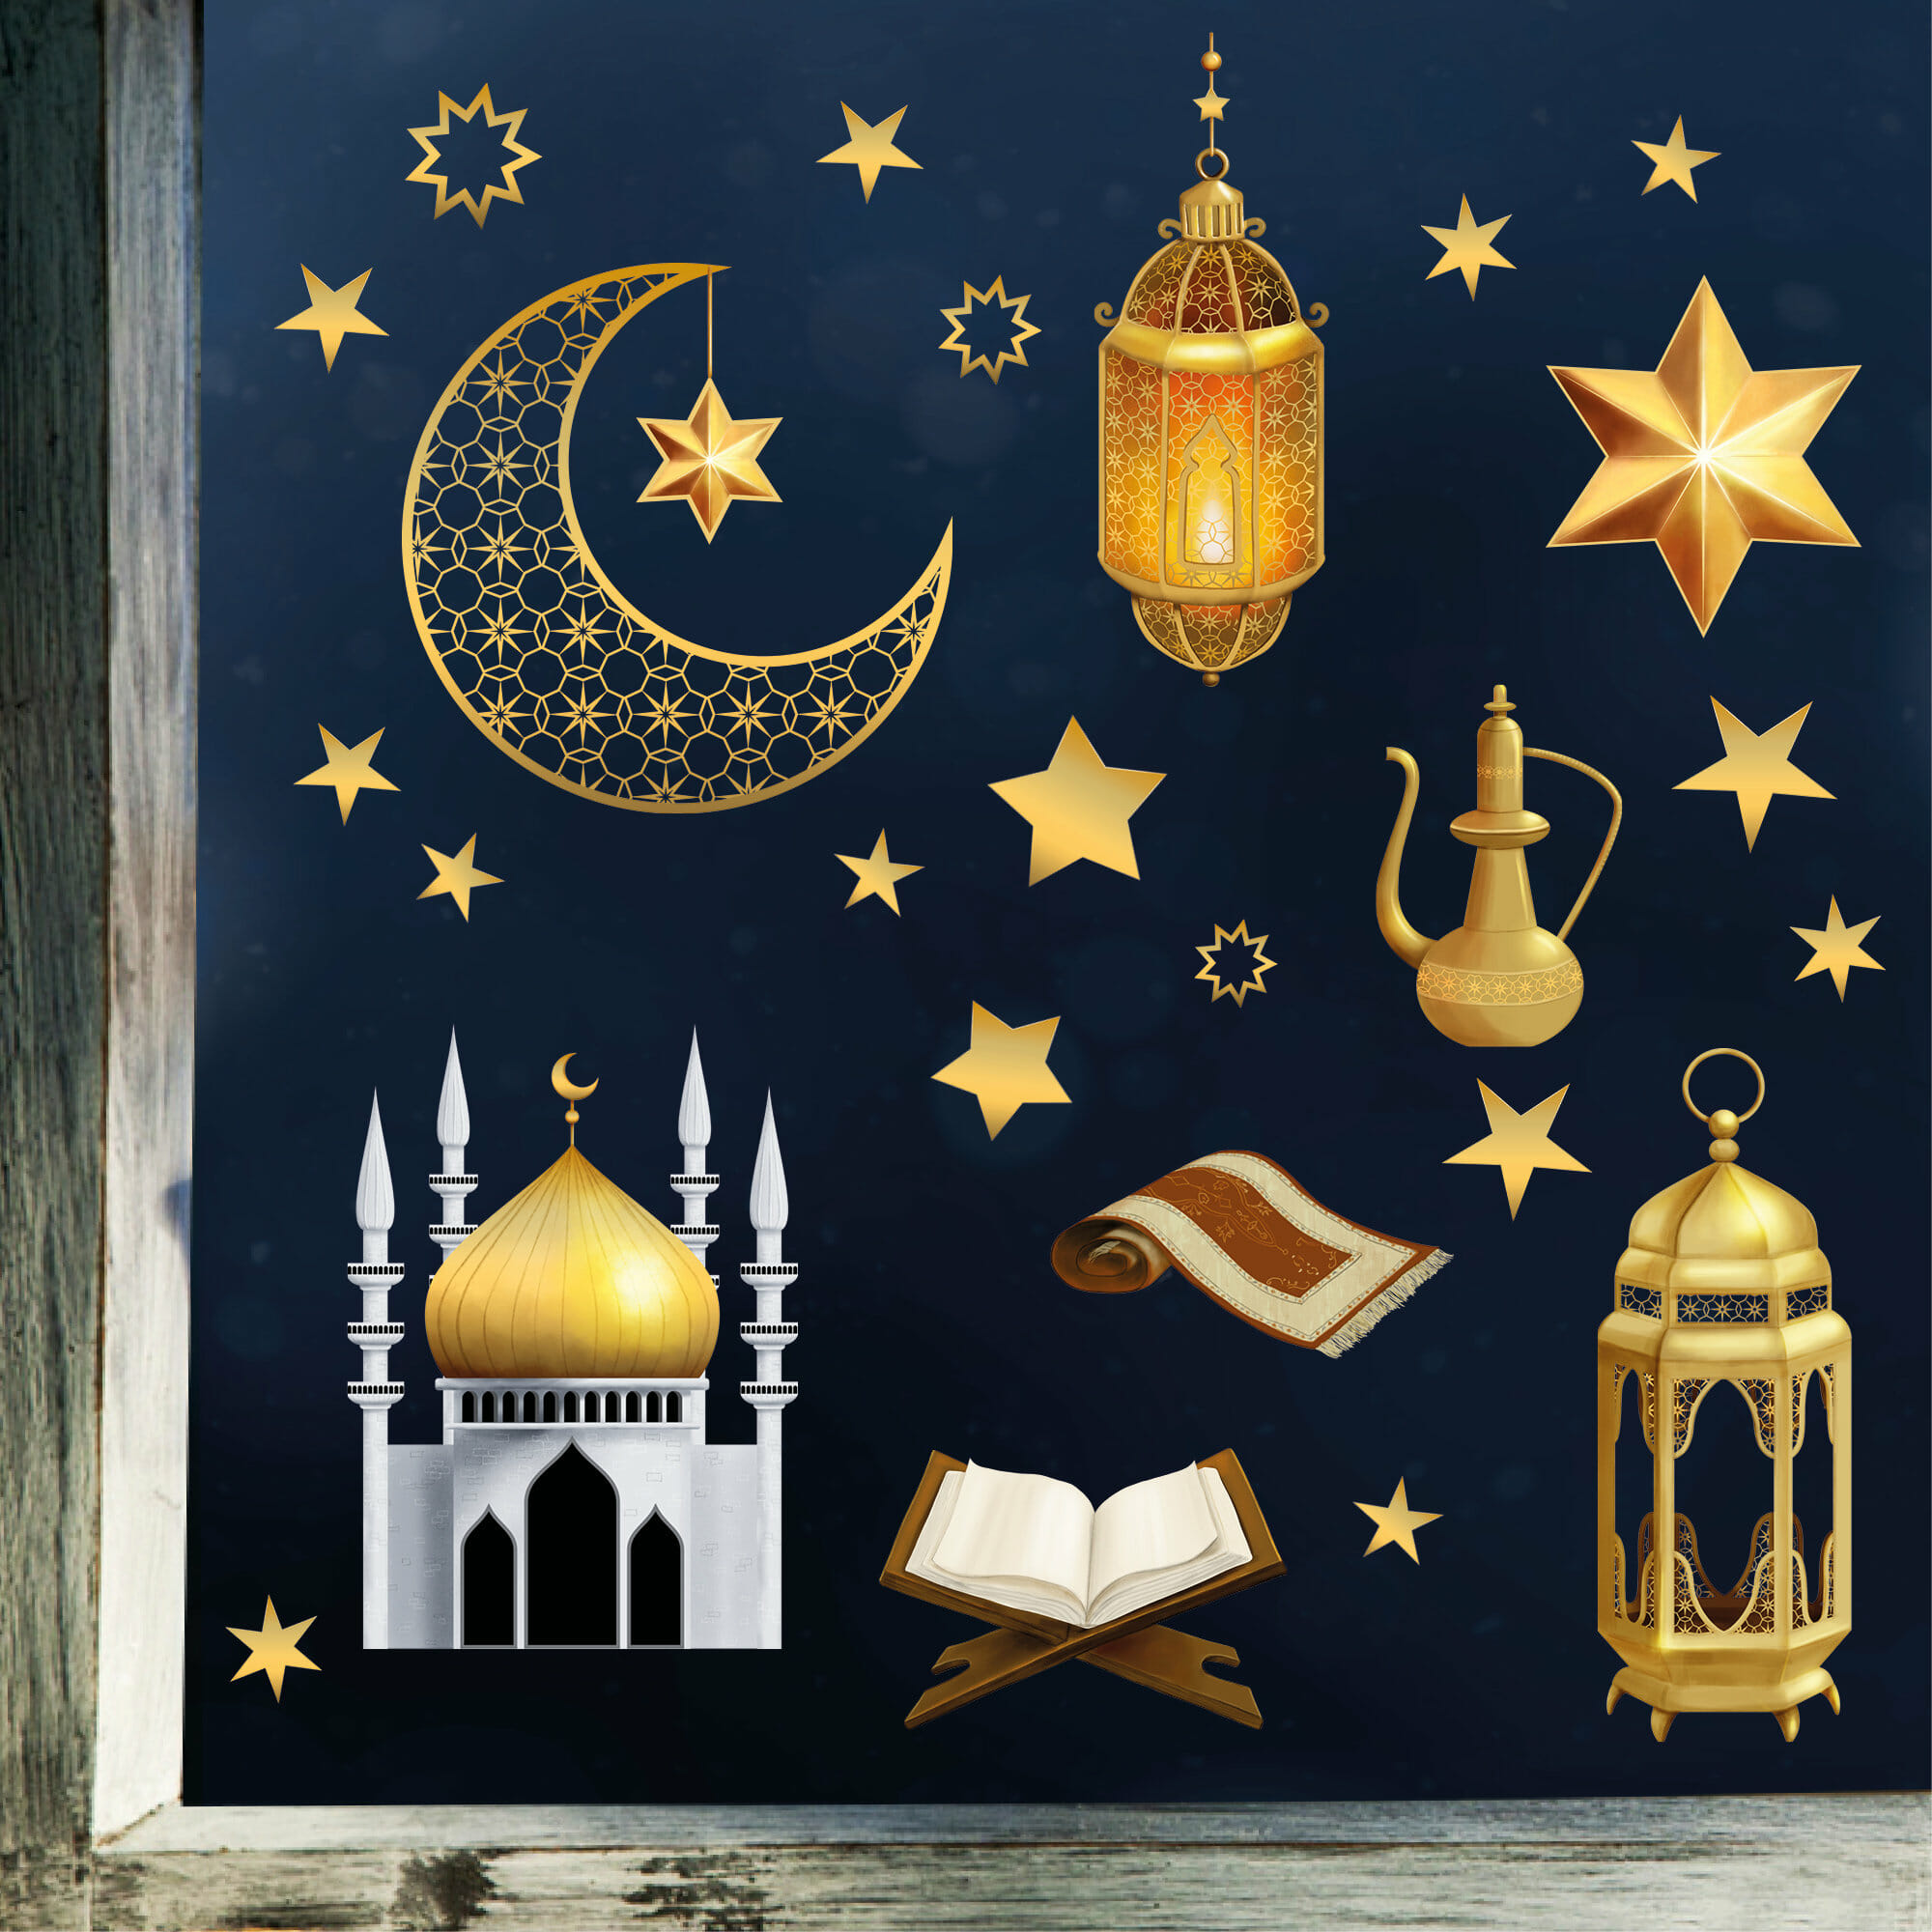 Fensterbild Ramadan Glaube Fastenmonat Set Sterne Laternen Moschee Gebetsteppich Heilig Fensteraufkleber, Dekoration Religion